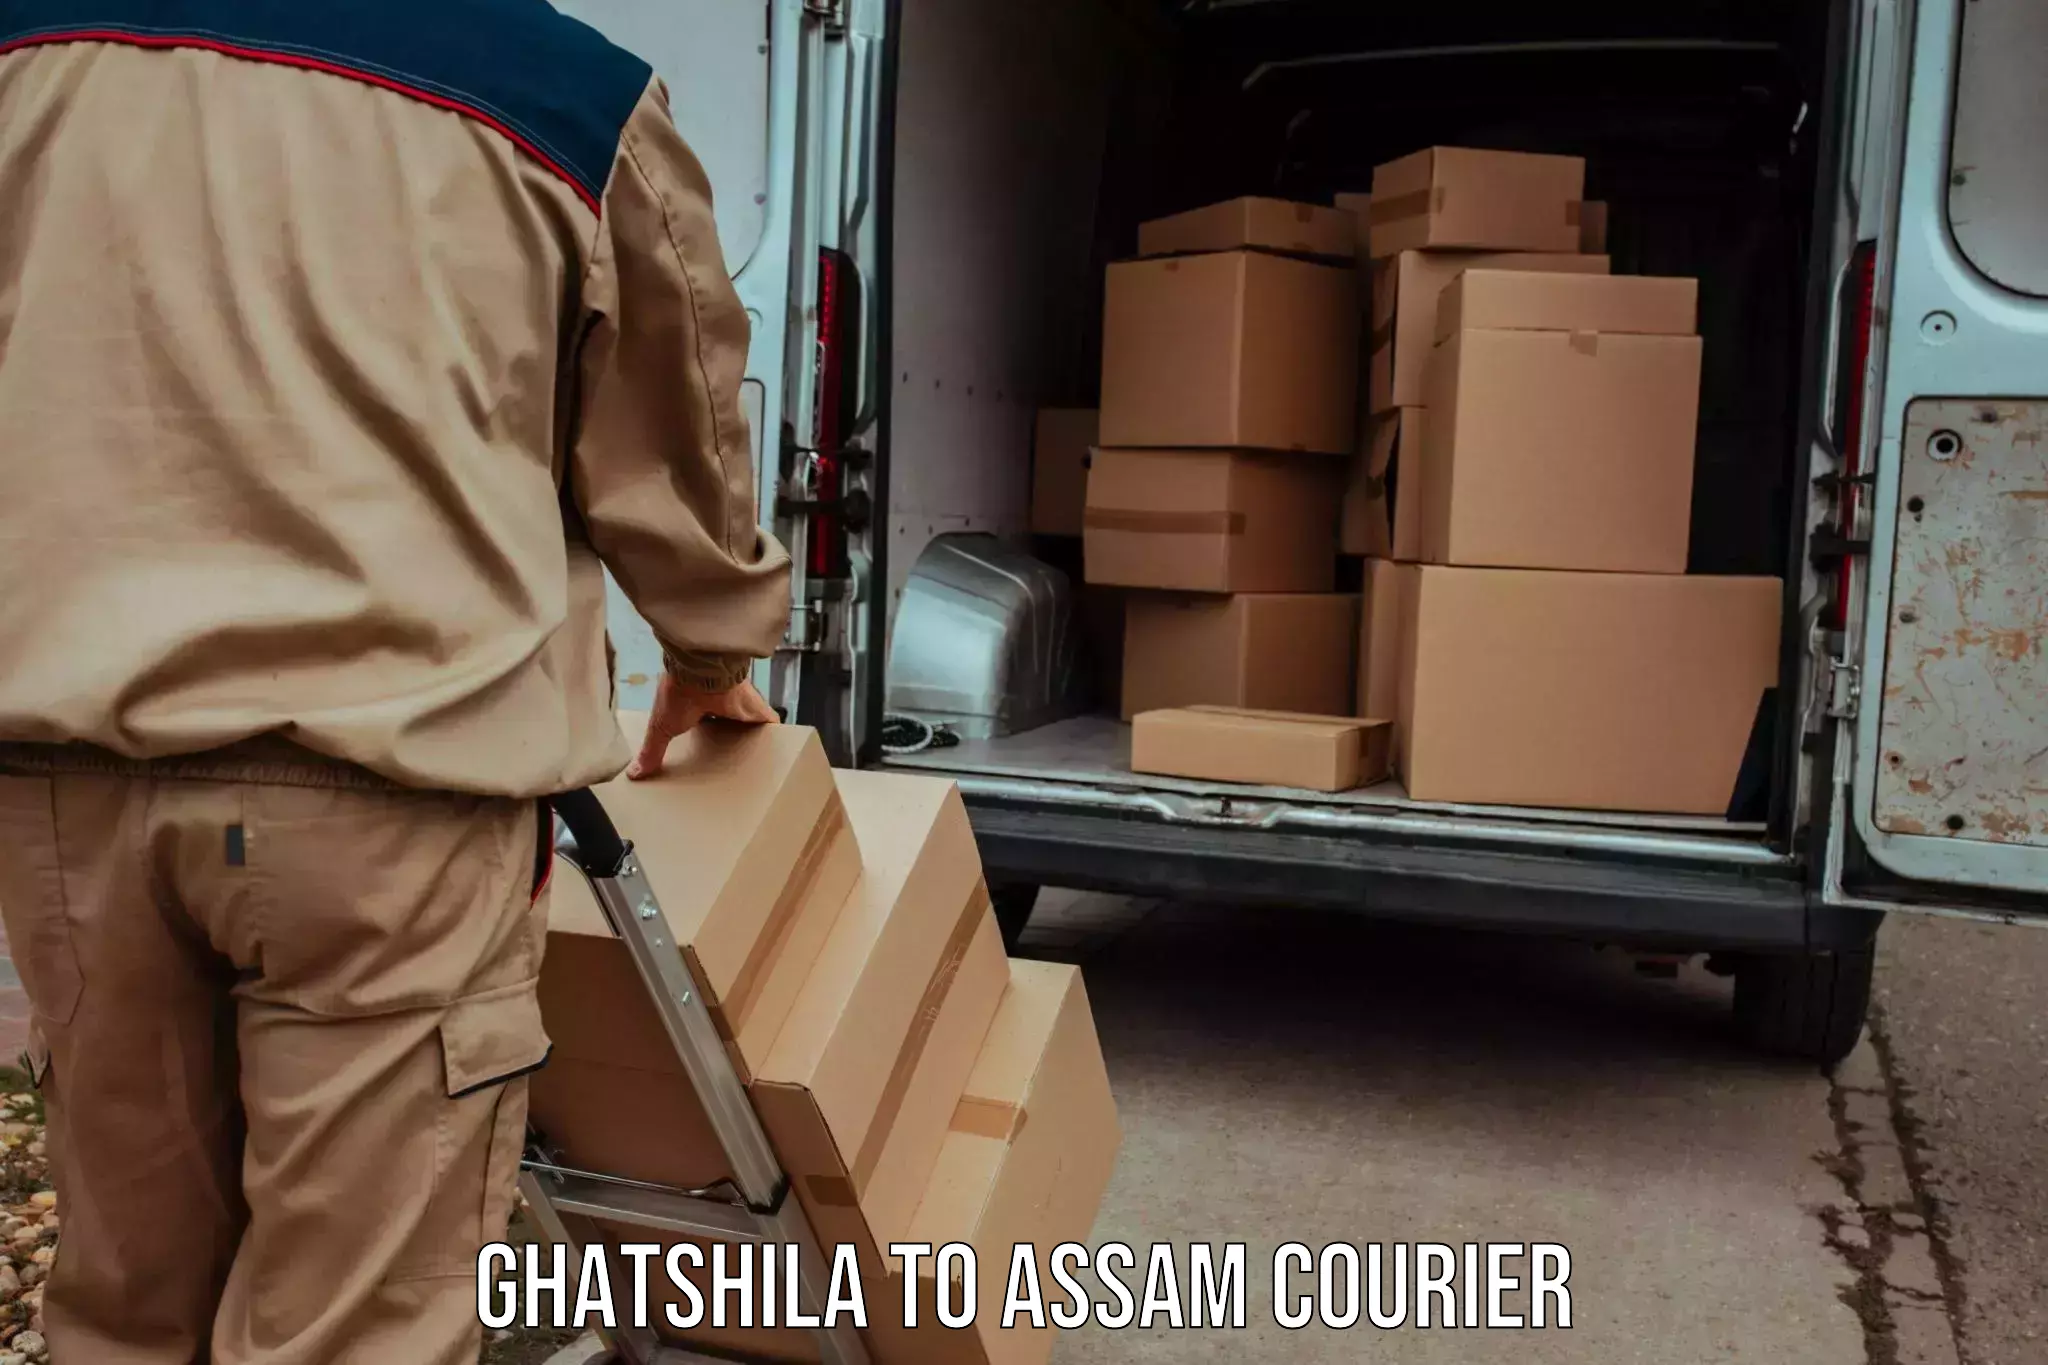 Professional courier handling Ghatshila to IIIT Guwahati